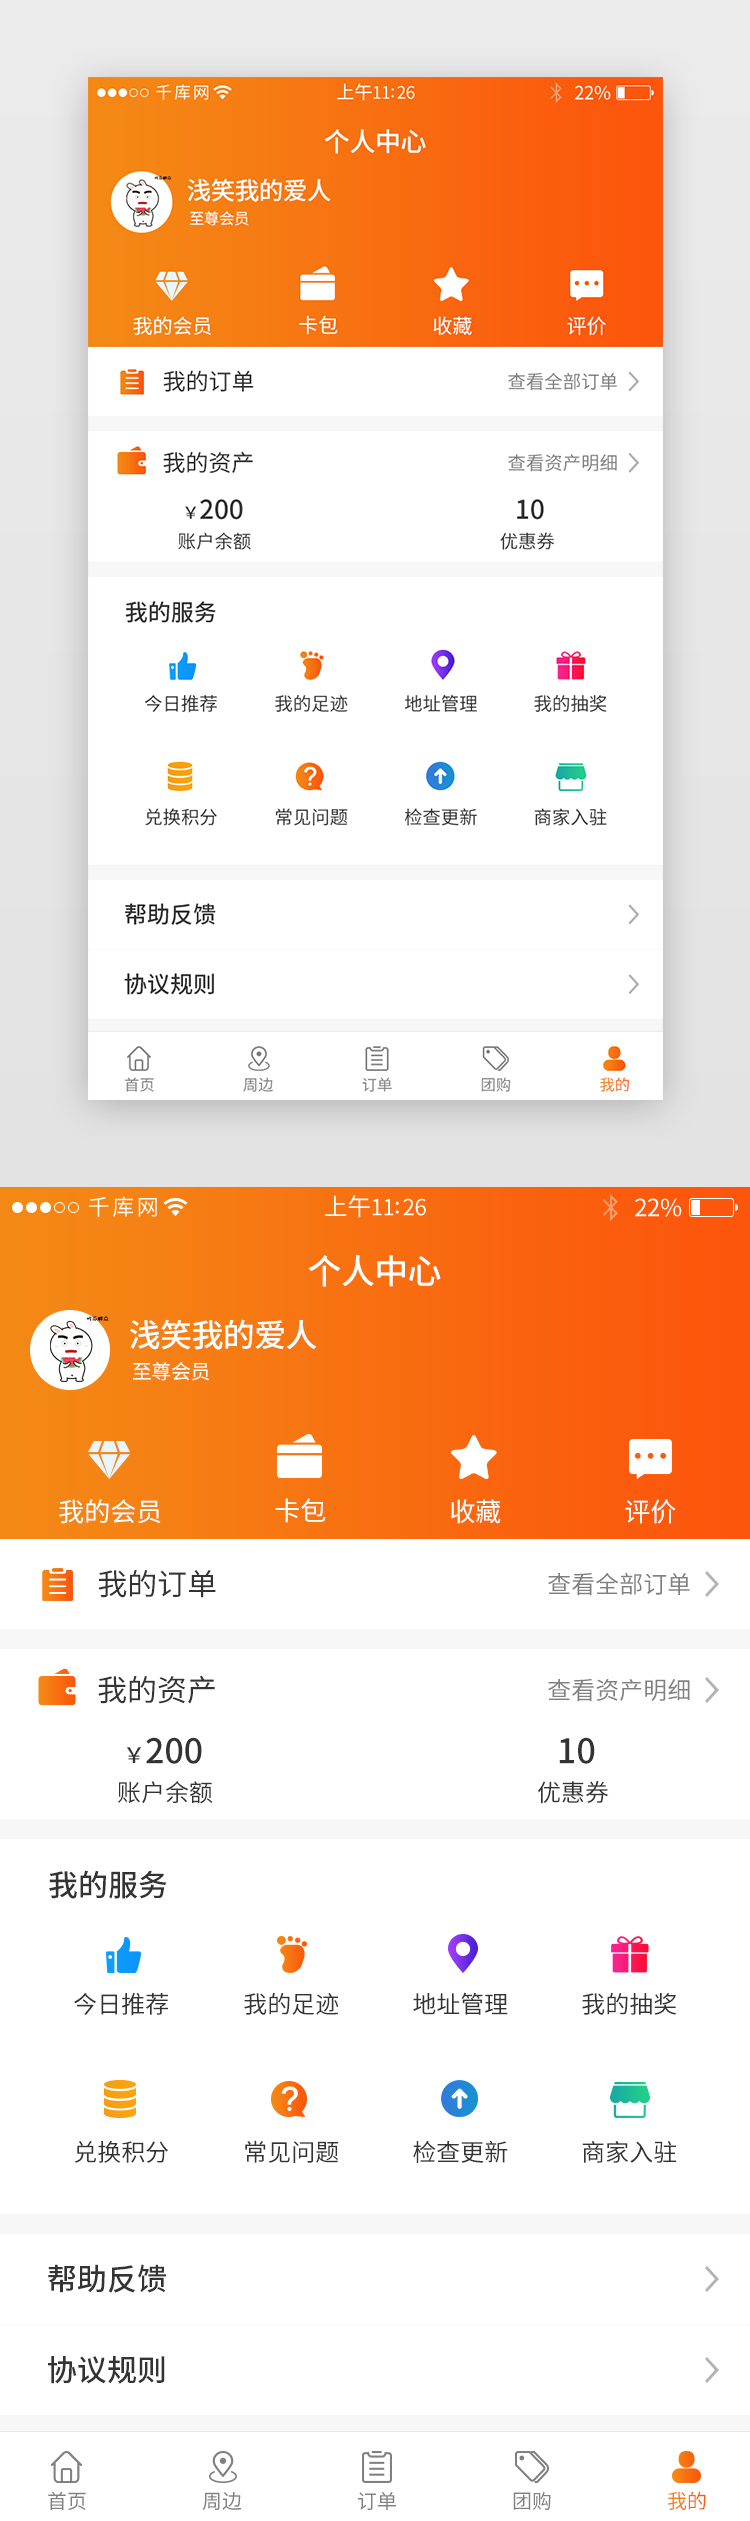 橙色系团购app个人中心界面图片